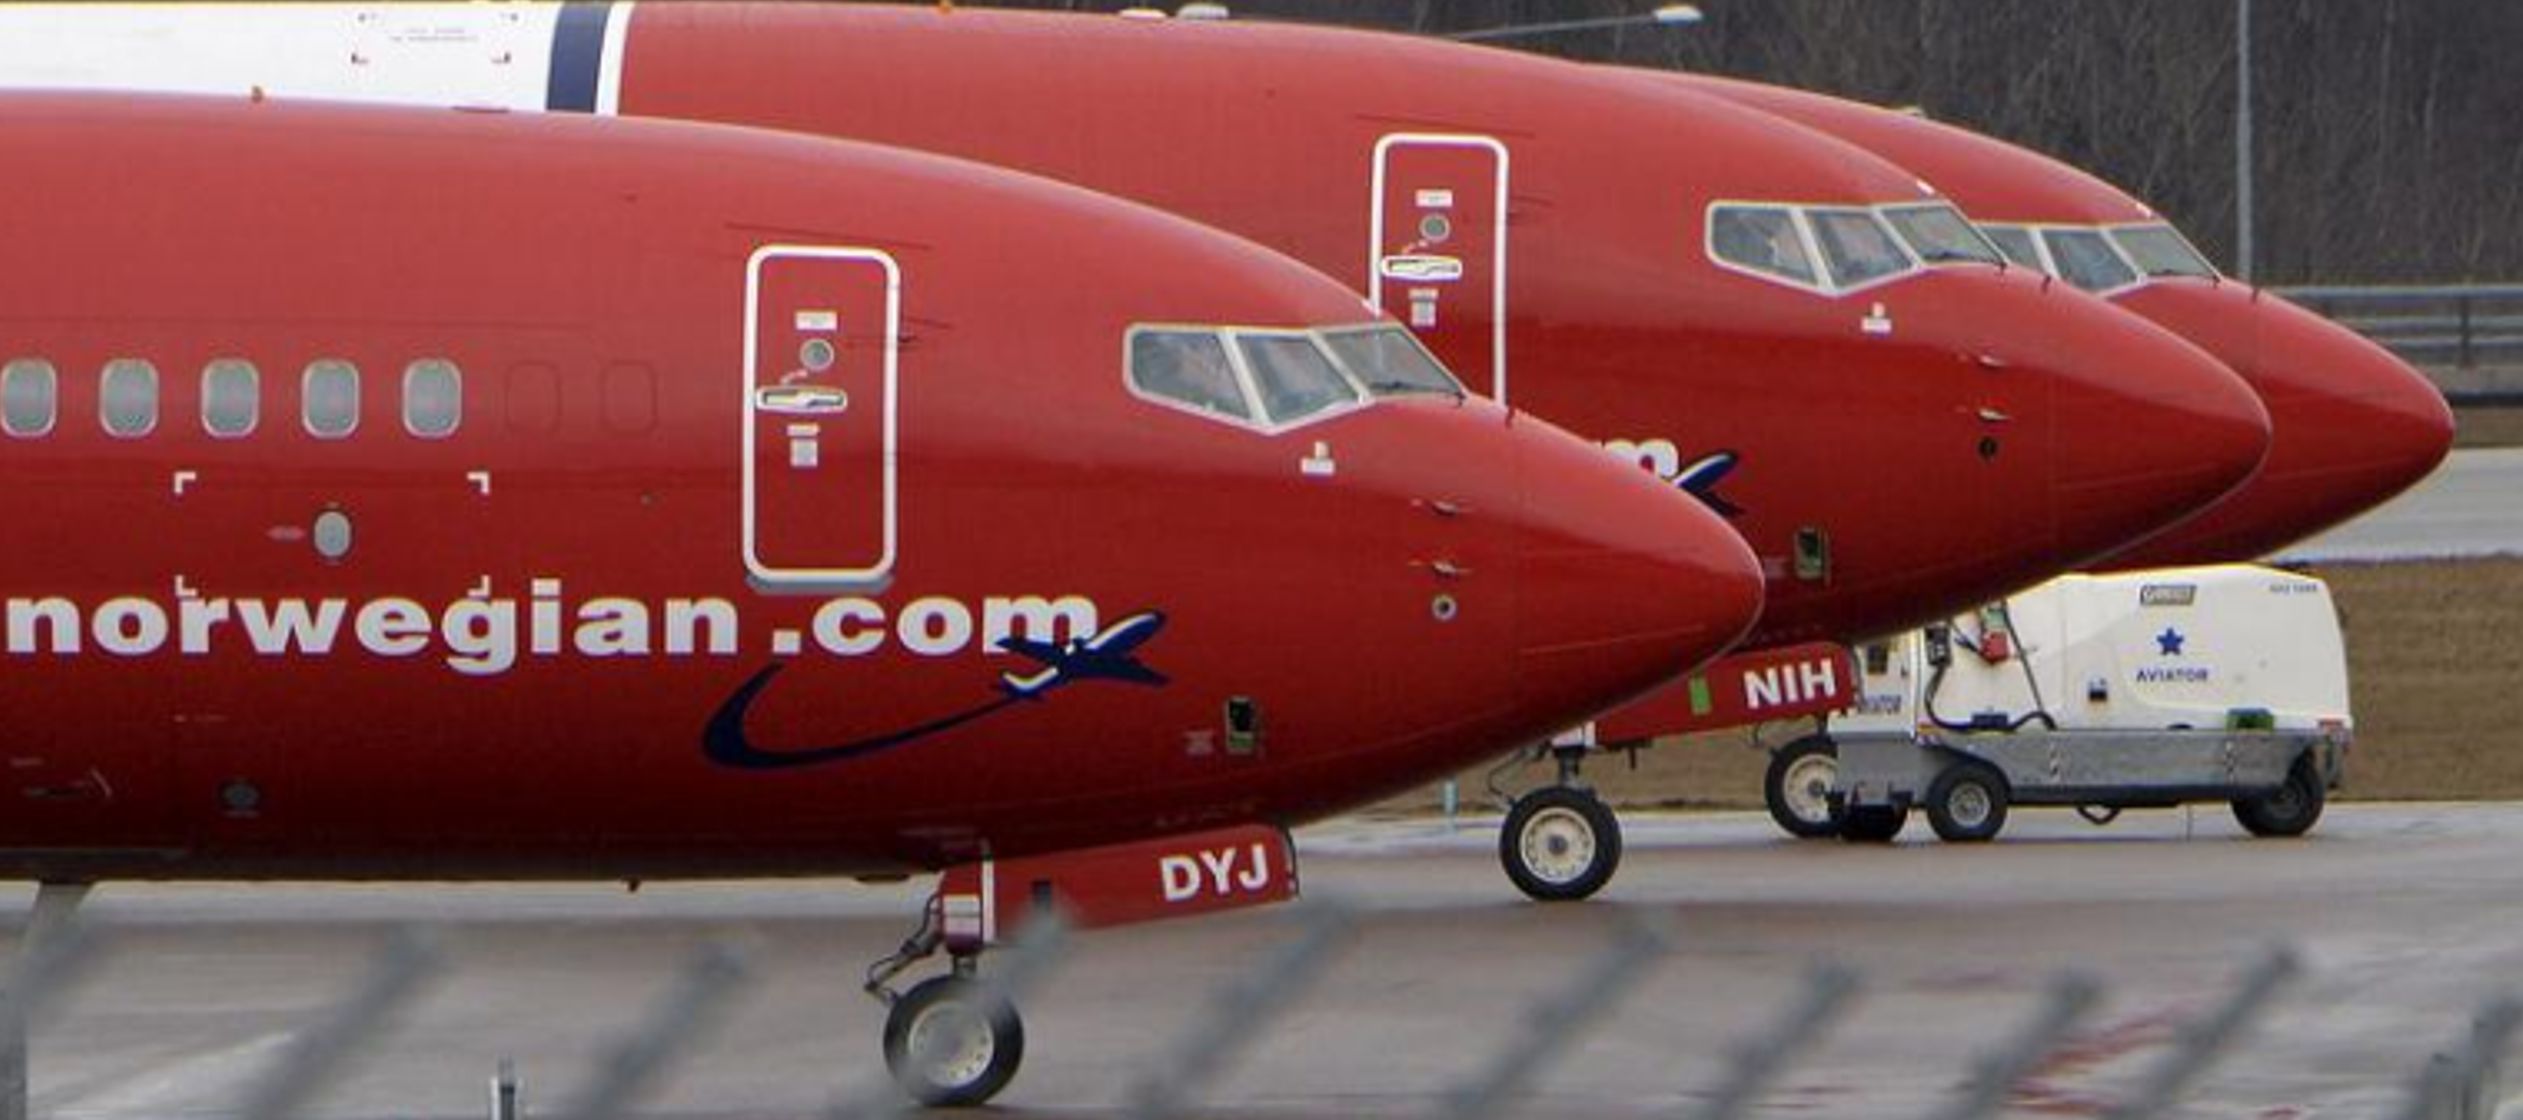 El director ejecutivo de Norwegian, Bjorn Kjos, dijo que la aerolínea podría explorar...